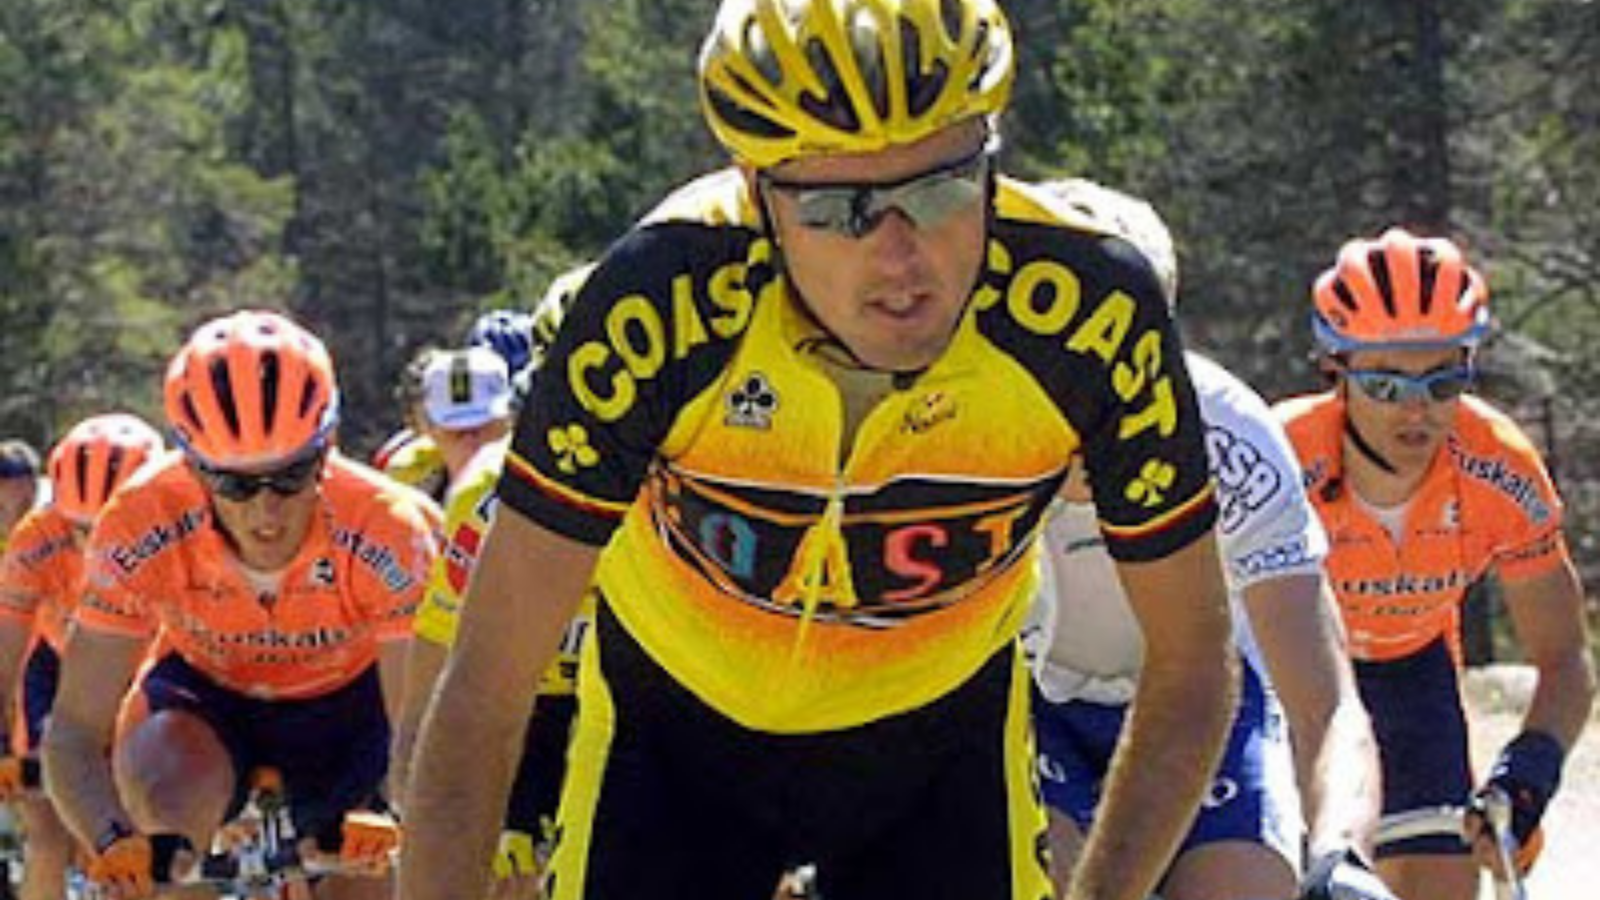 Alex Zülle in the Vuelta a Espana leader jersey